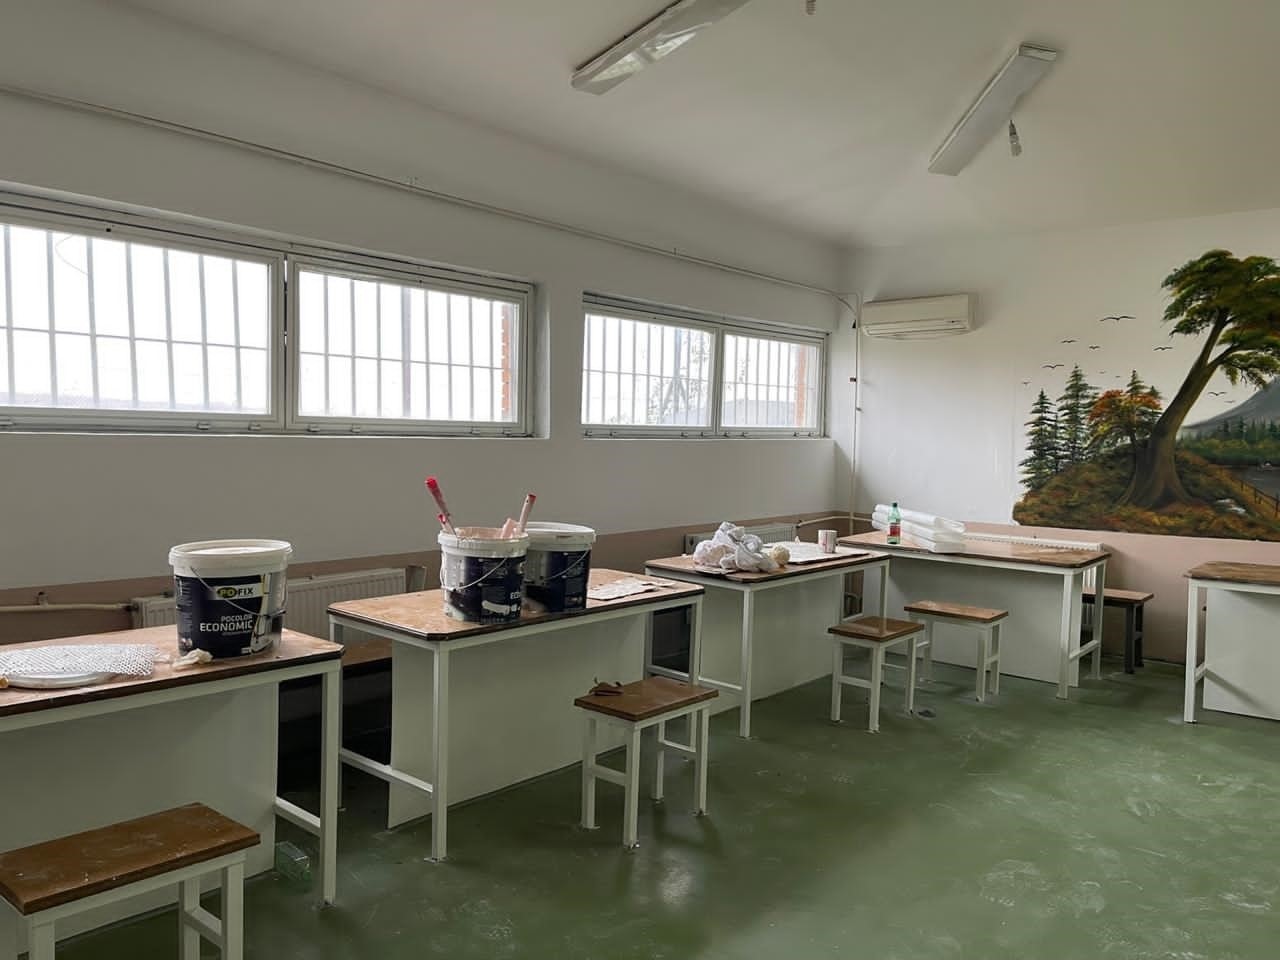 Në burgun e Dubravës të dënuarit rinovojnë sallën e vizitave familjare